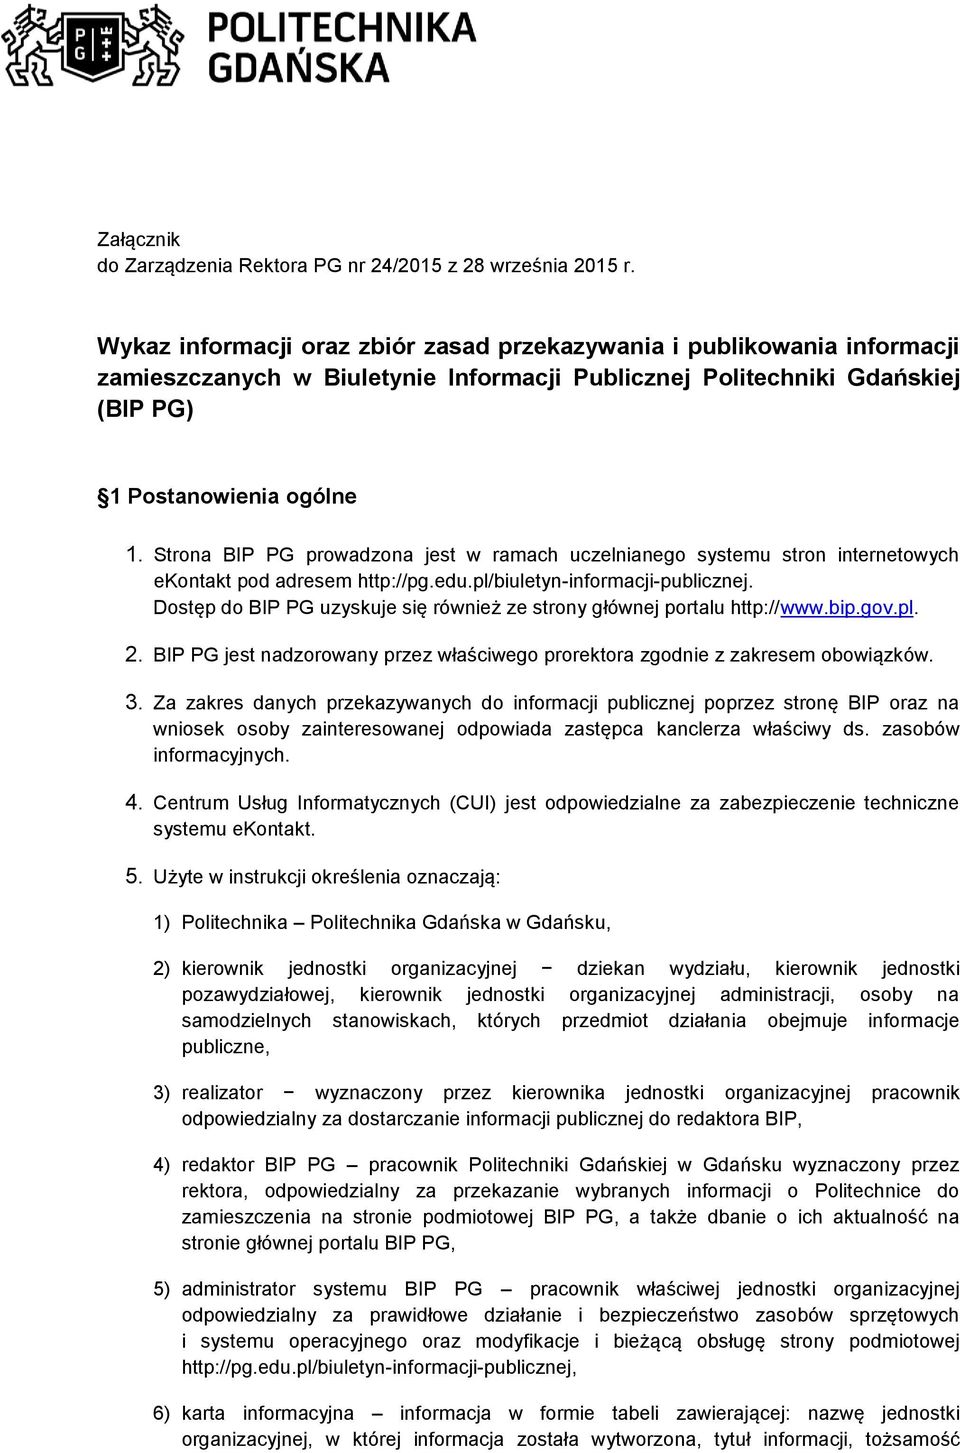 Strona BIP PG prowadzona jest w ramach uczelnianego systemu stron internetowych ekontakt pod adresem http://pg.edu.pl/biuletyn-informacji-publicznej.